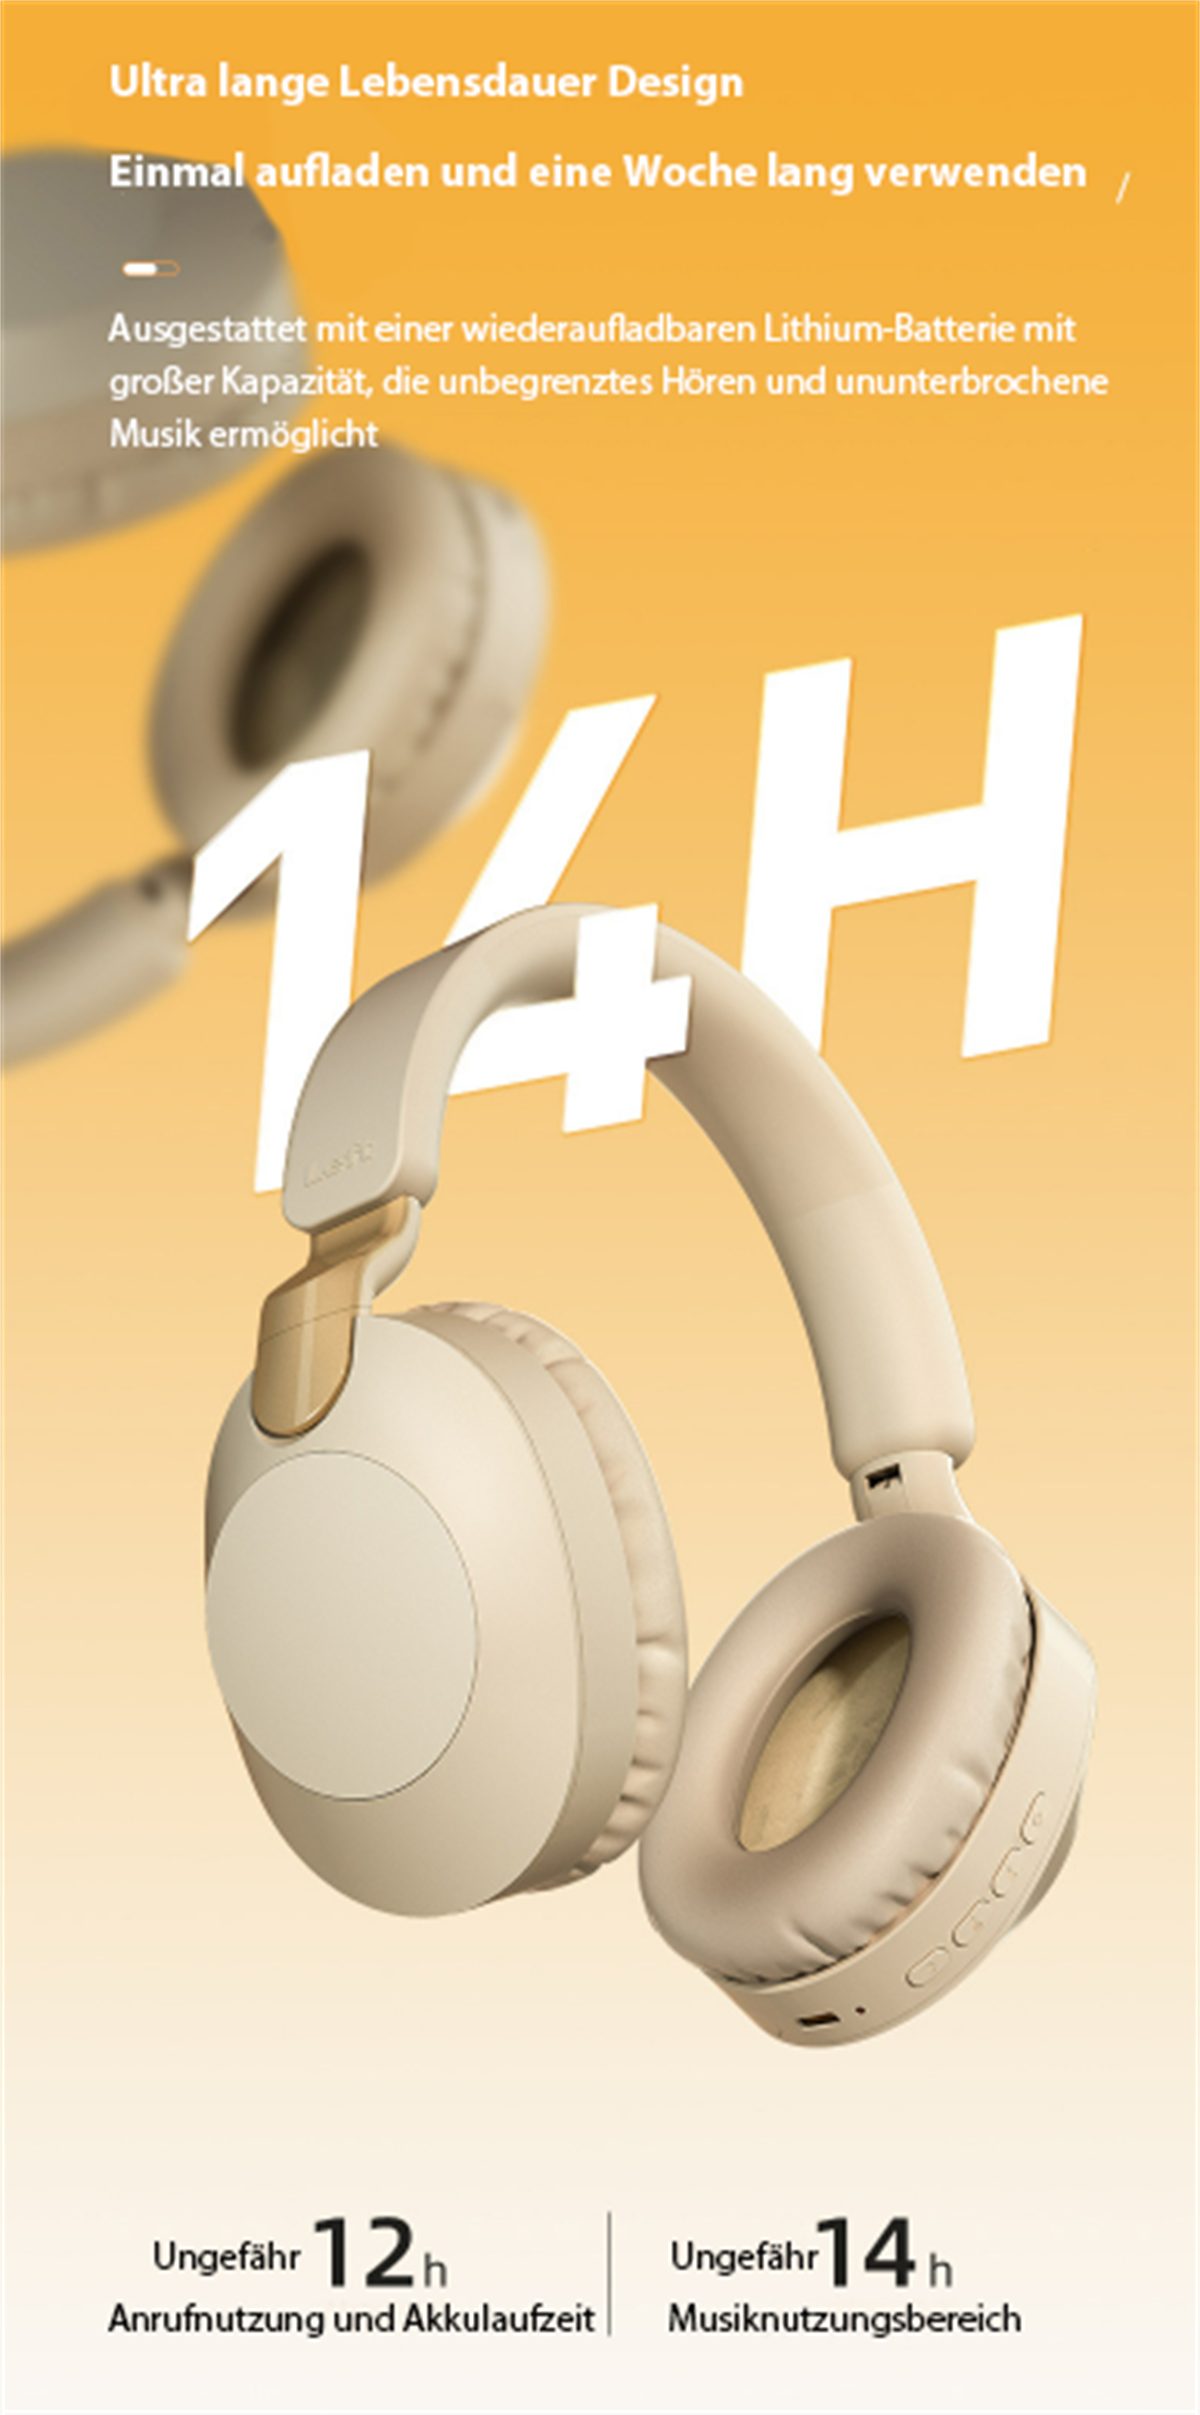 langer Over-Ear-Kopfhörer Kopf selected befestigtes Akkulaufzeit carefully Bluetooth-Gaming-Headset mit Silber Weiss Am